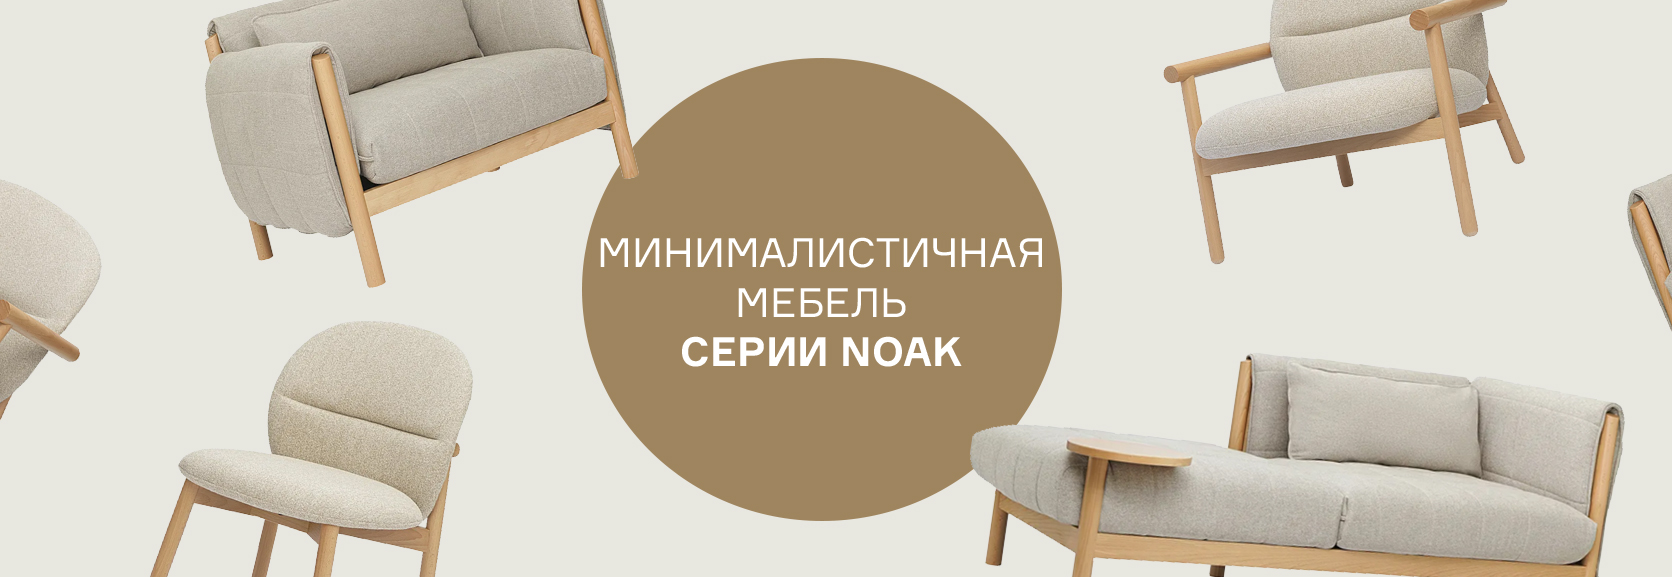 Сопутствующее изображение для страницы Минималистичная мебель серии Noak